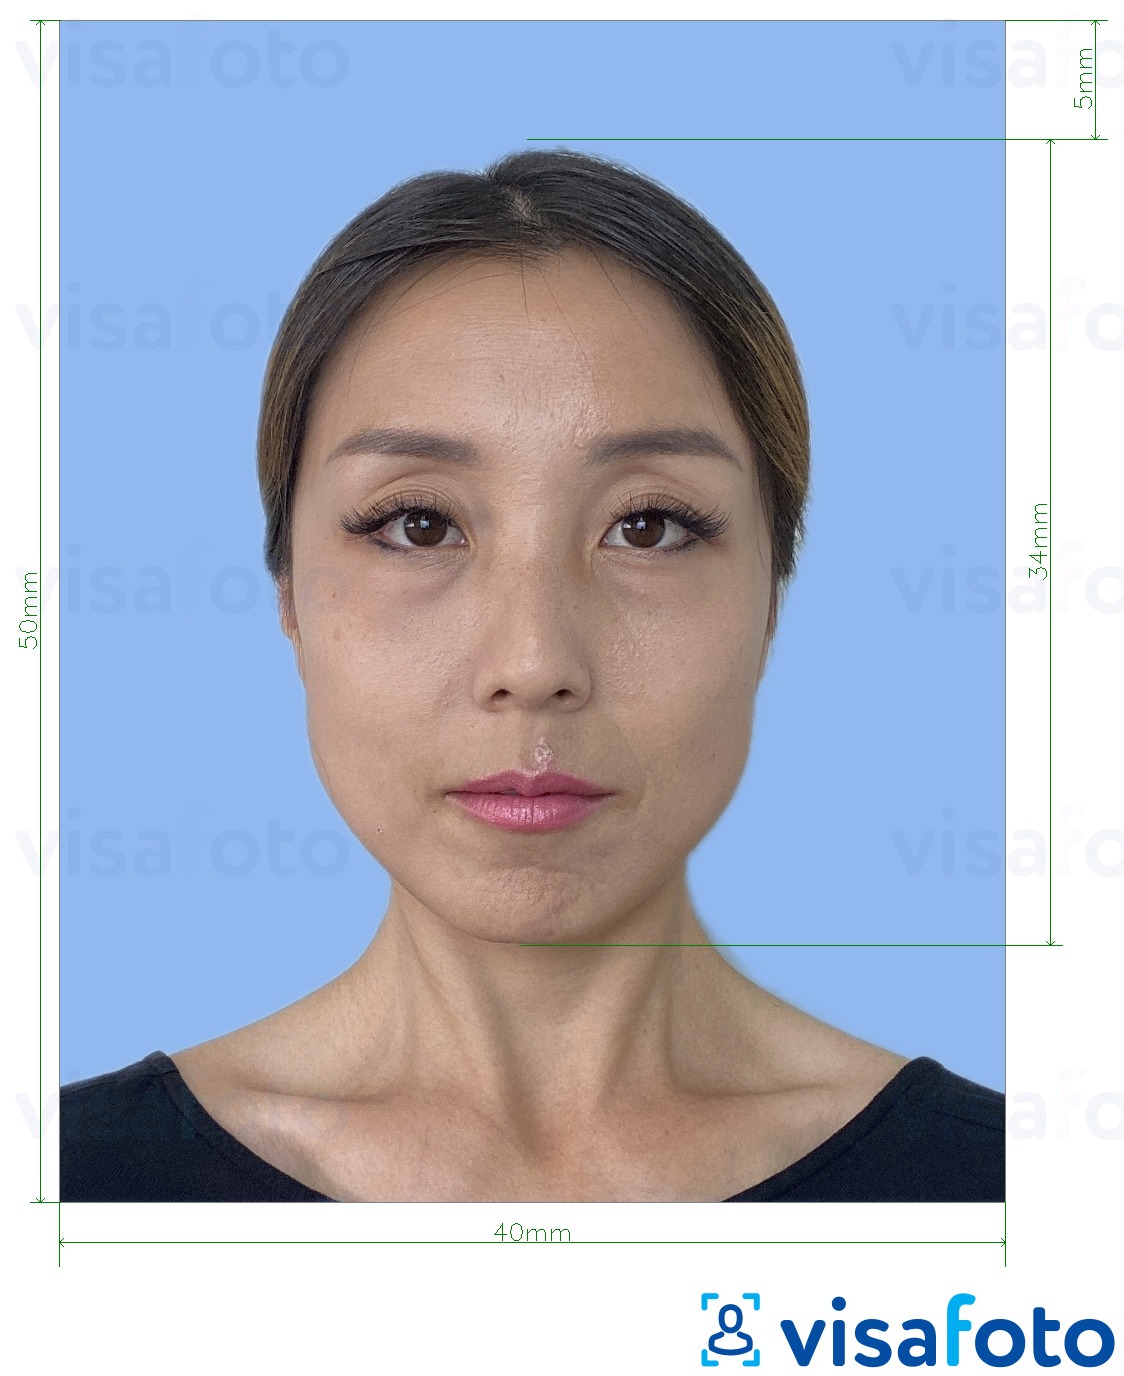 Esempio di foto per Patente di guida straniera giapponese 4x5 cm con specifiche delle dimensioni esatte